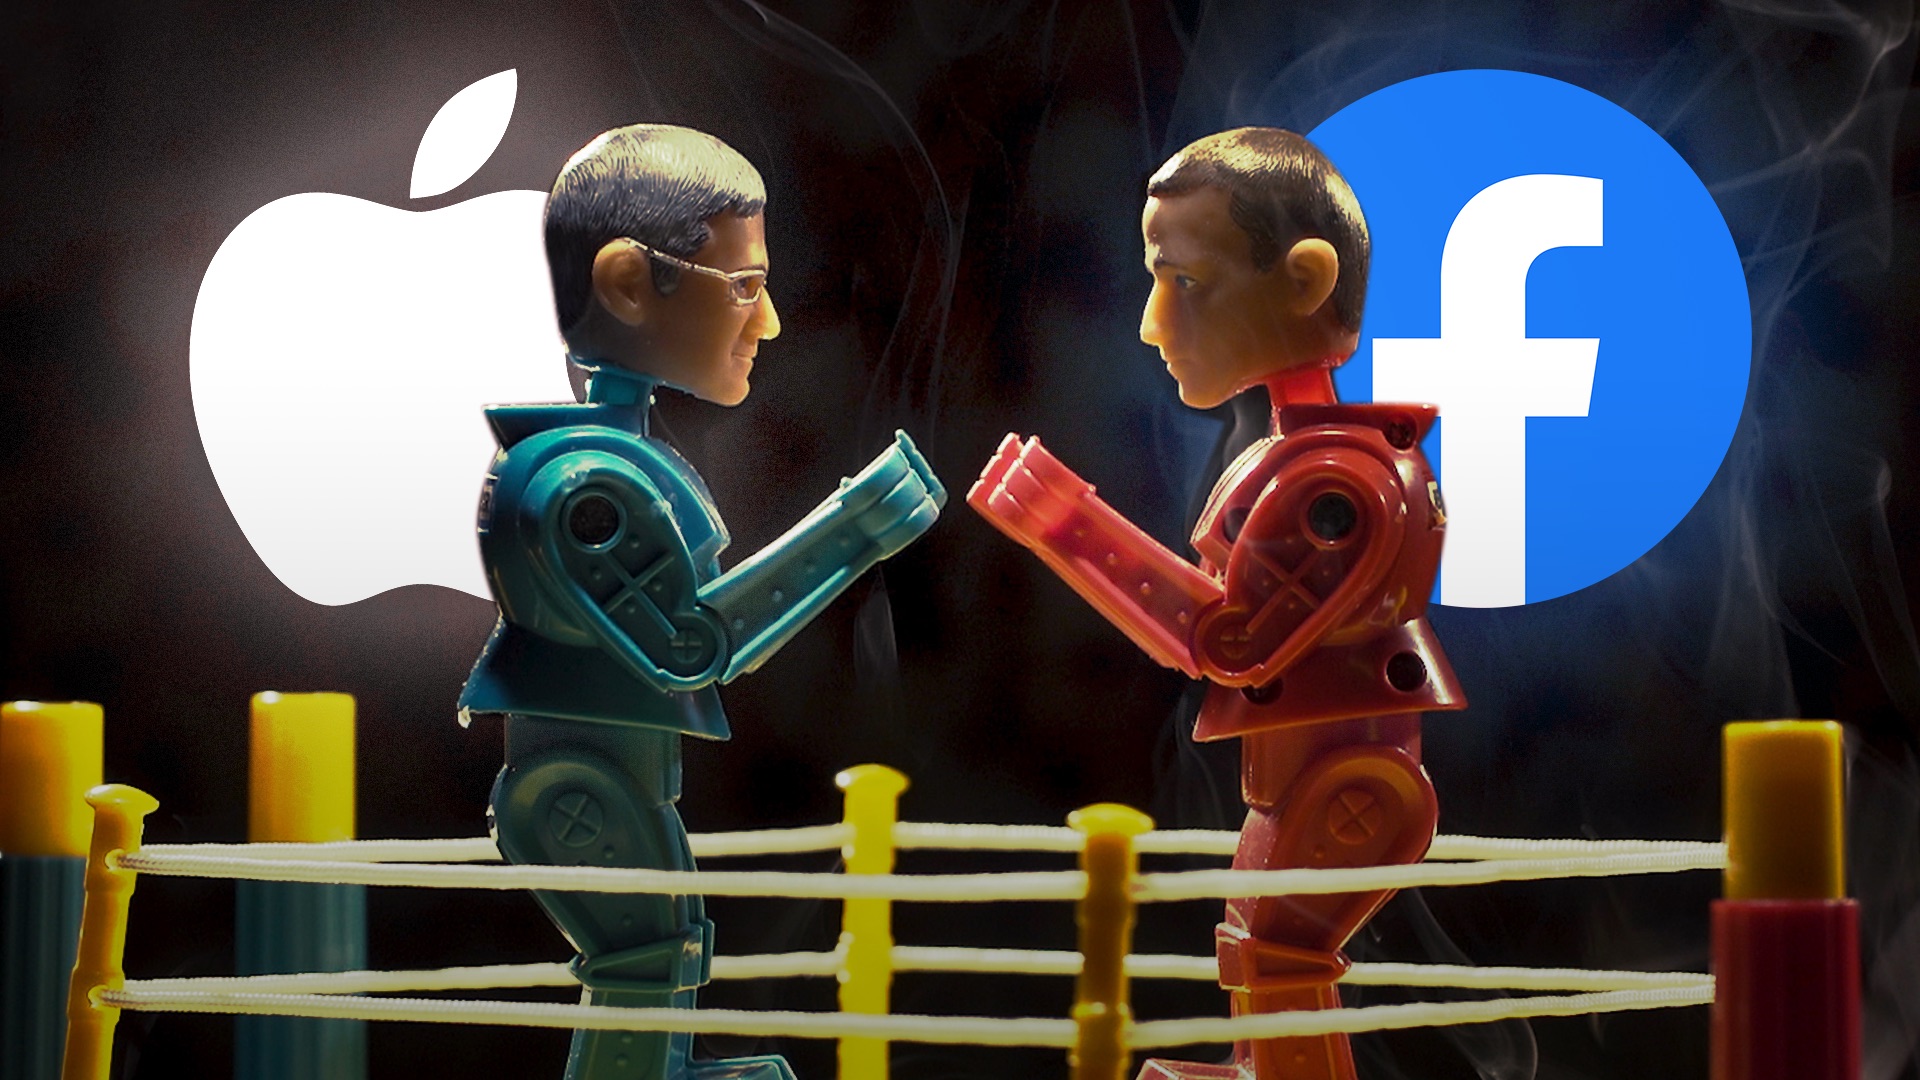 شركة آبل و فيسبوك يناقشان تقاسم الإيرادات بما في ذلك نسخة اشتراك محتملة خالية من الإعلانات من فيسبوك